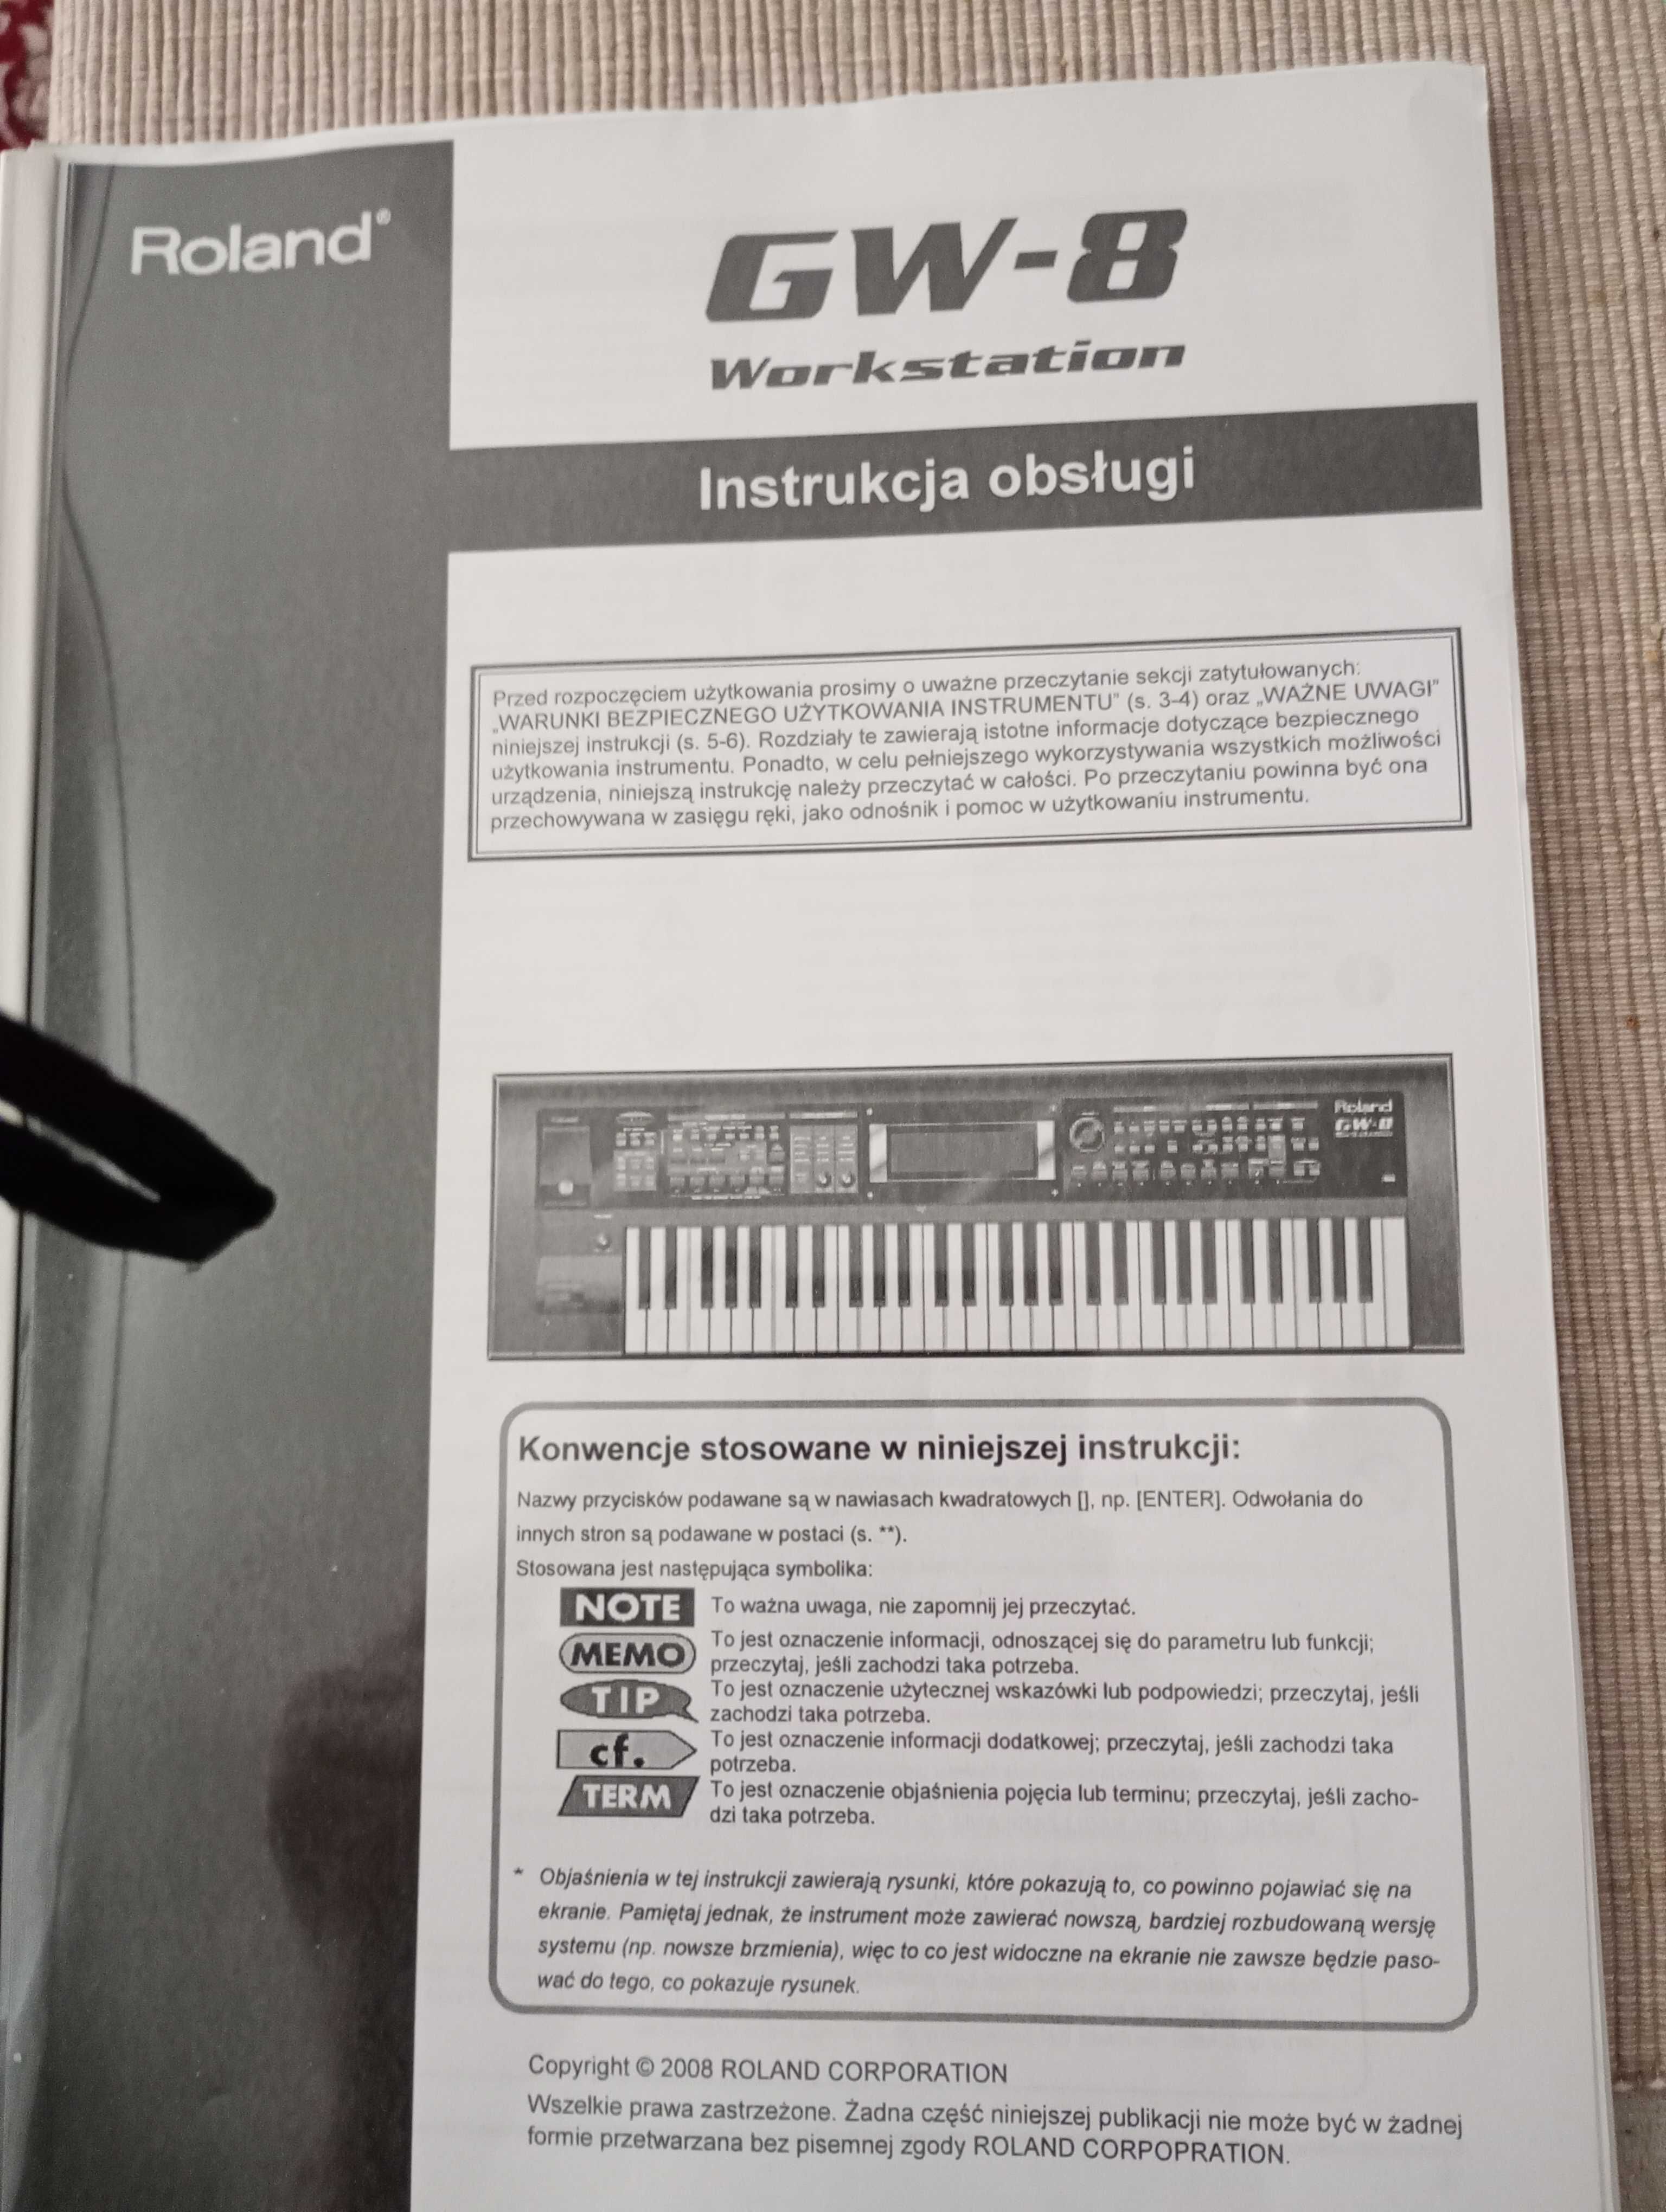 Keyboard Roland GW-8 Workstation odtwarza Mp3